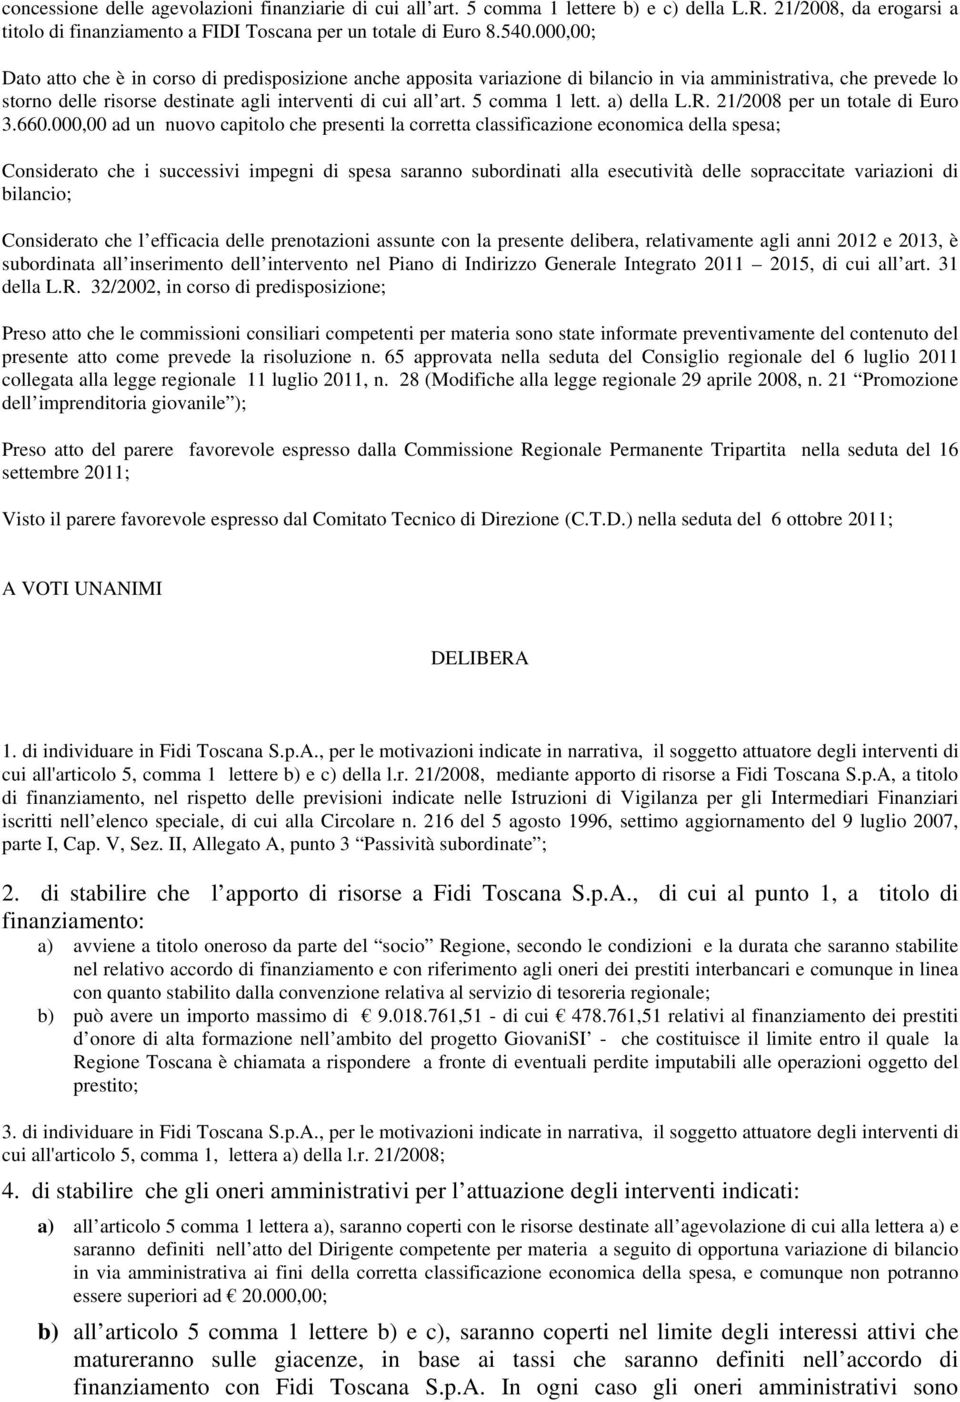 5 comma 1 lett. a) della L.R. 21/2008 per un totale di Euro 3.660.